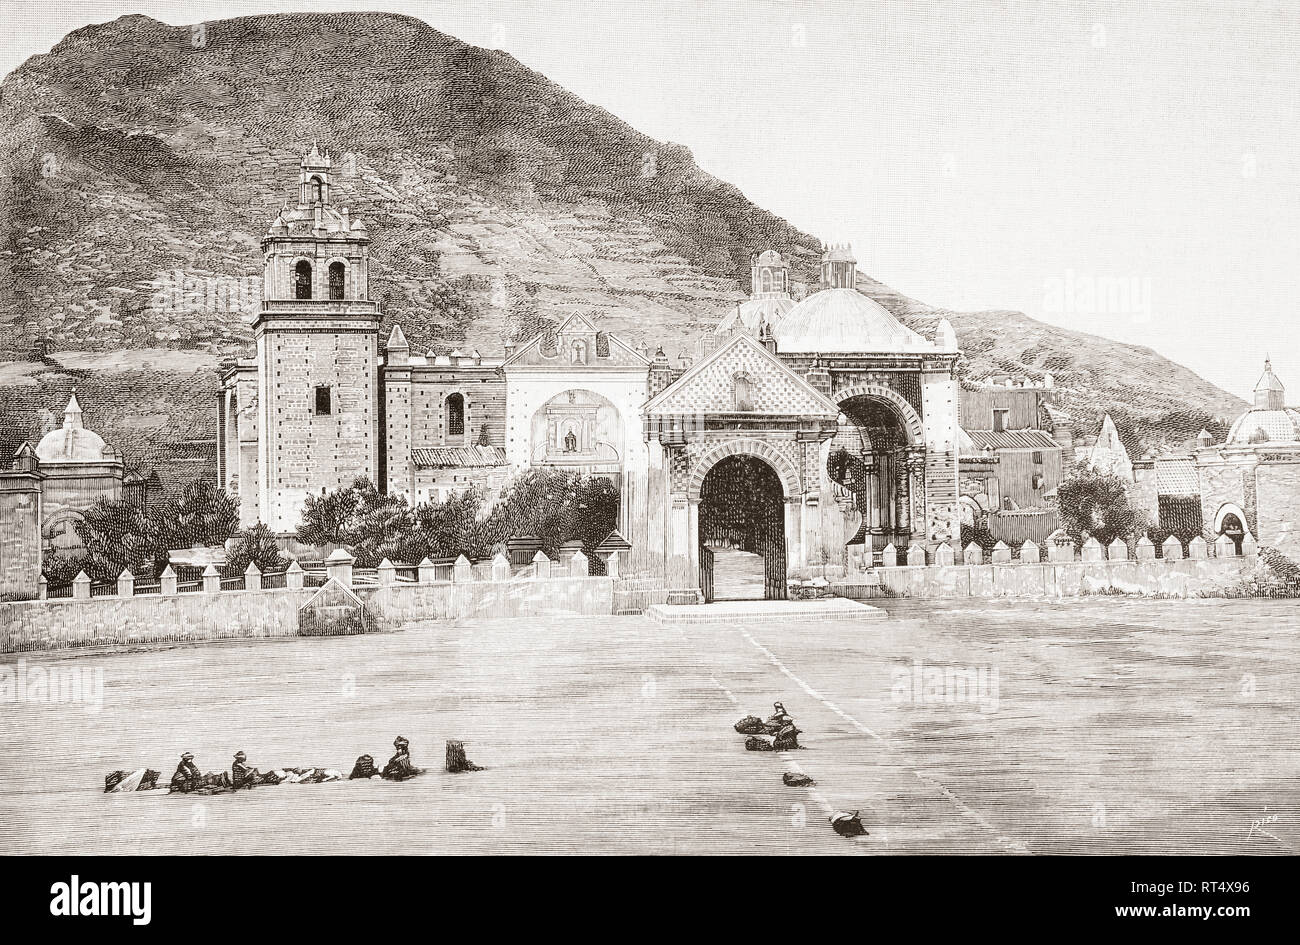 Basilique de Notre Dame de Copacabana, Bolivie, vu ici au 19e siècle. De la Ilustracion Artistica, publié 1887. Banque D'Images